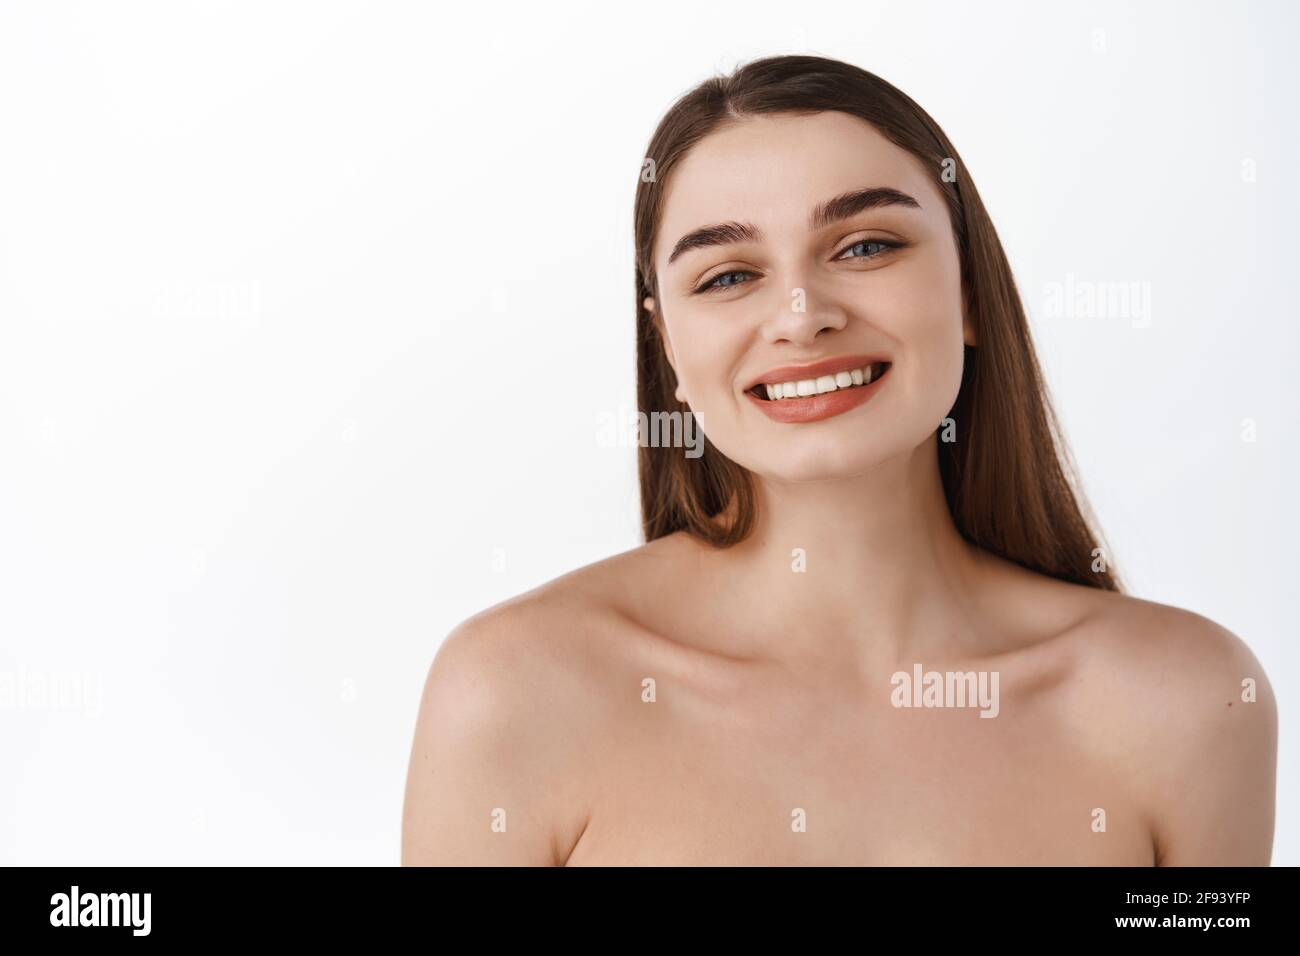 Hautpflege und Schönheit. Nahaufnahme Frauenporträt mit gesunder natürlicher Gesichtshaut, perfekten weißen Zähnen, glänzendem glücklichem Lächeln, Konzept der Hautpflege und Spa Stockfoto